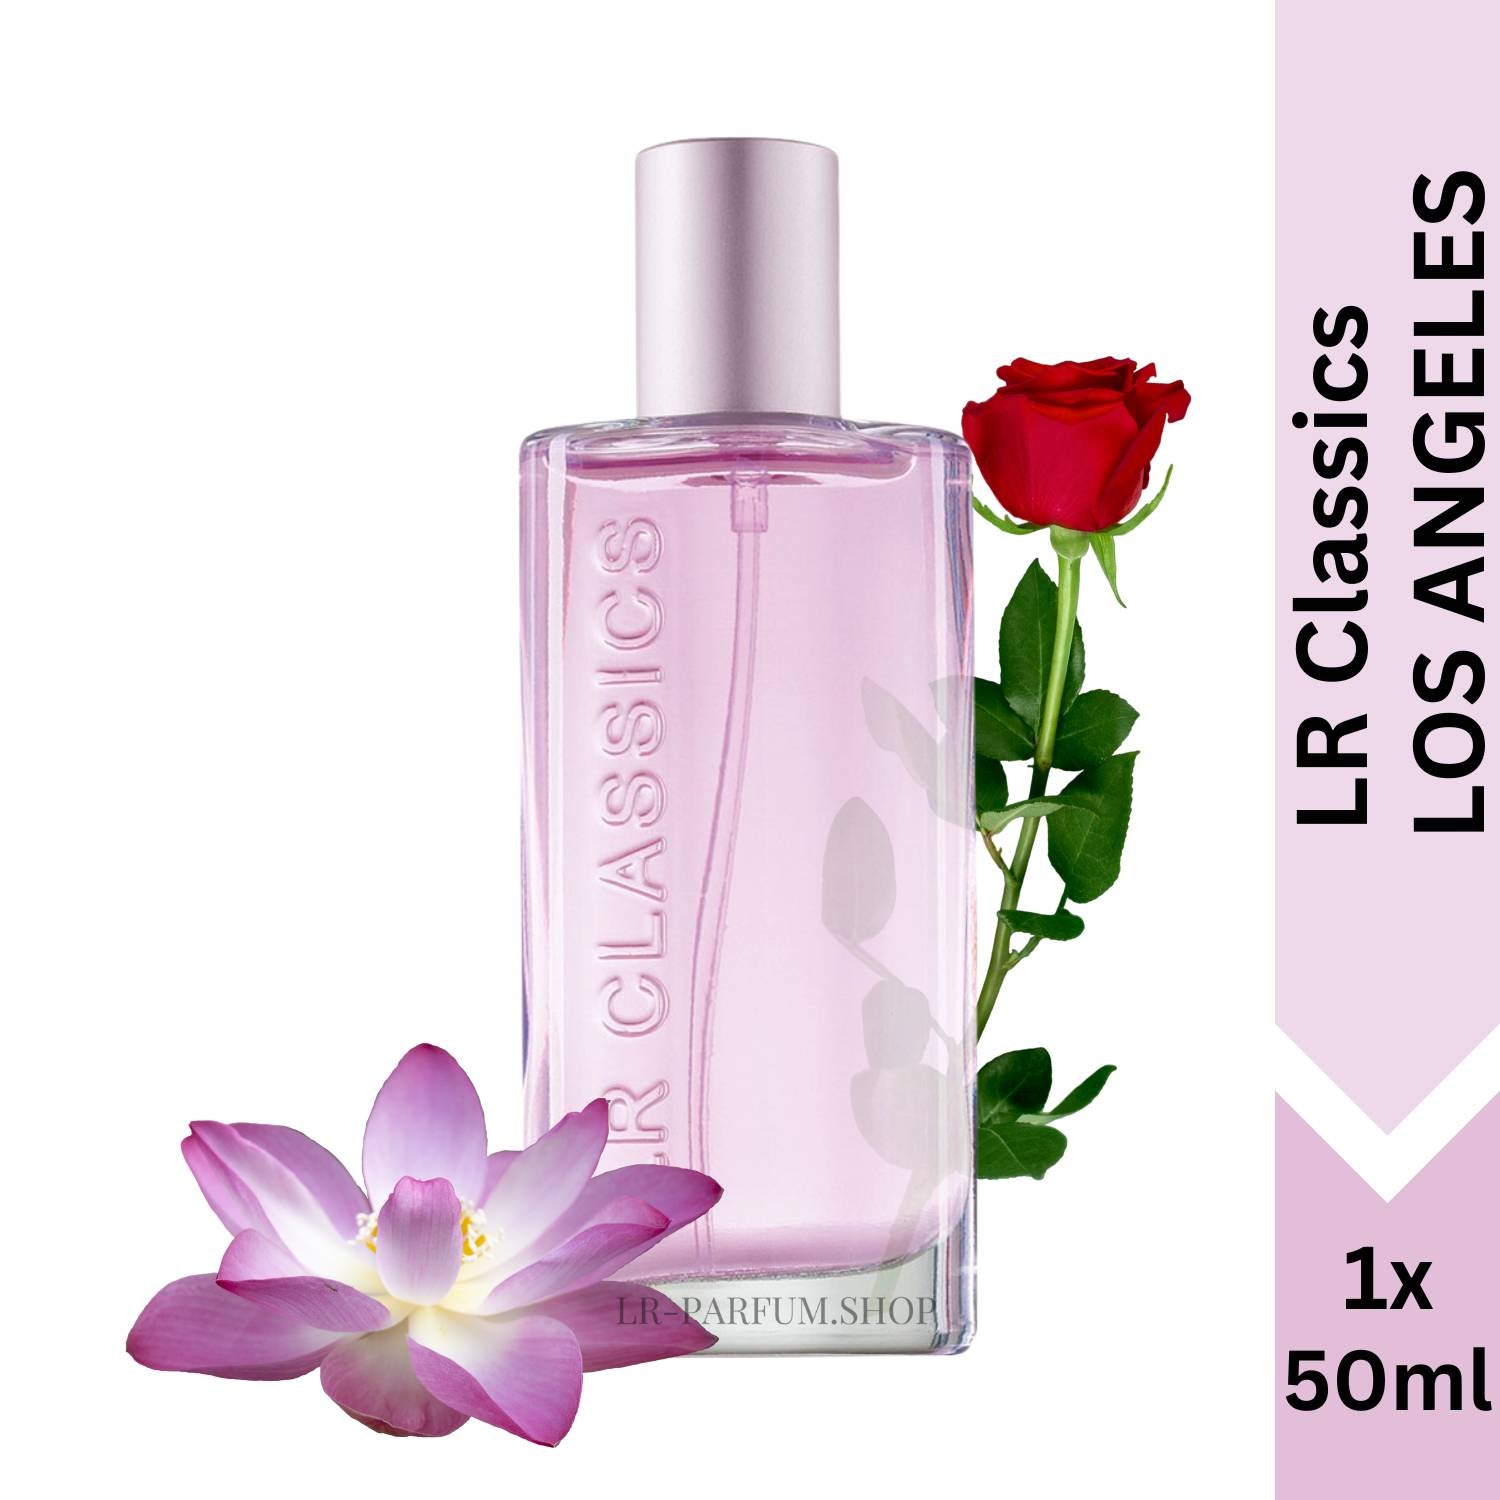 LR Classics Los Angeles - Eau de Parfum 50ml - LR-Parfum.shop